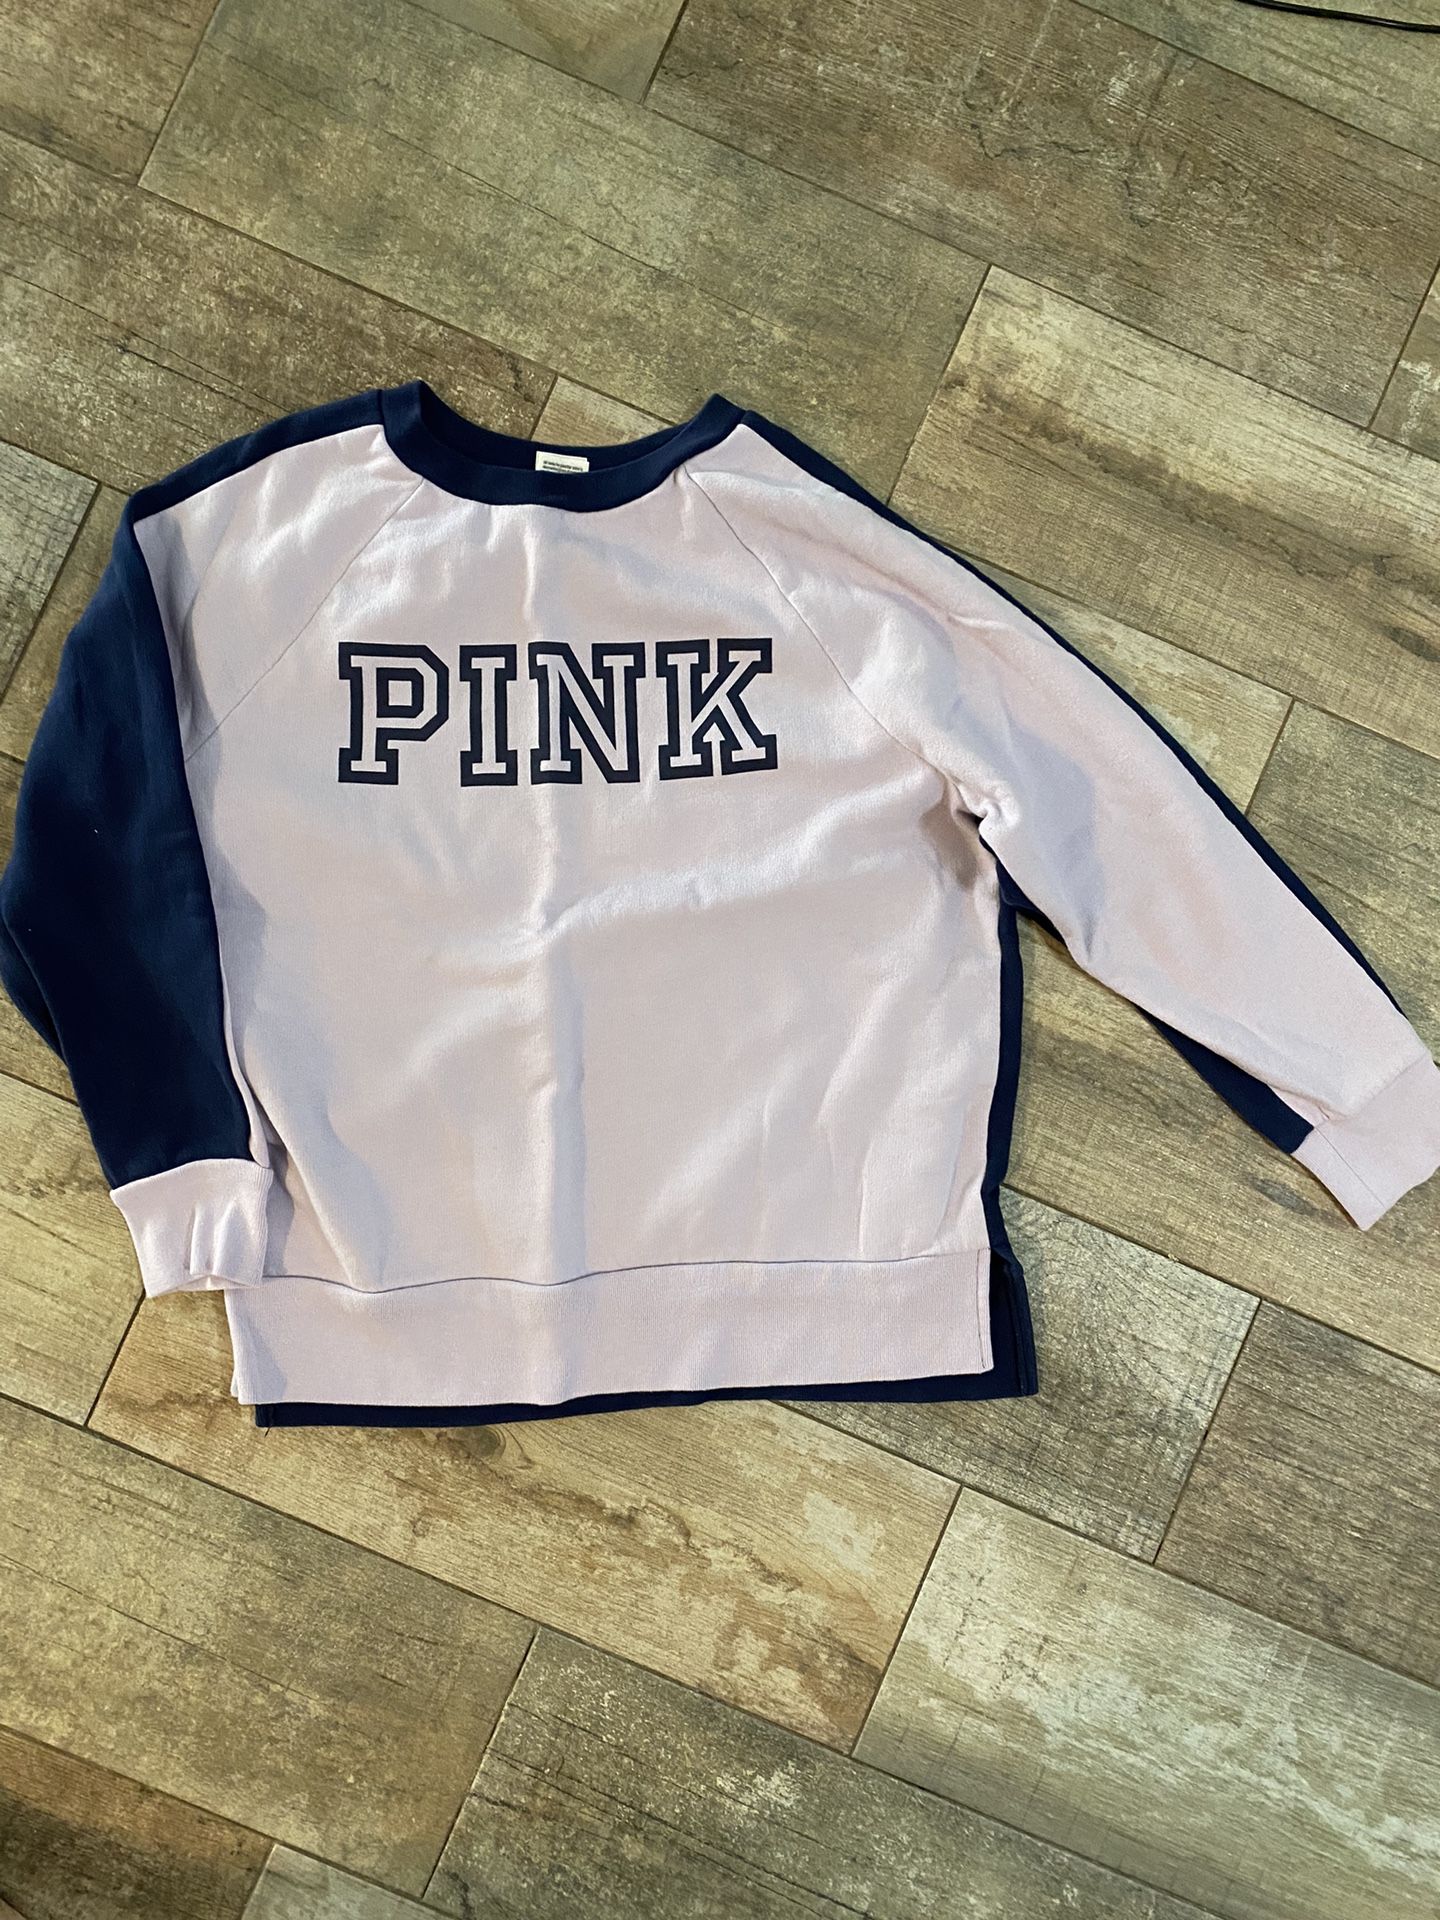 Victoria’s Secret “PINK” Sweatshirt 